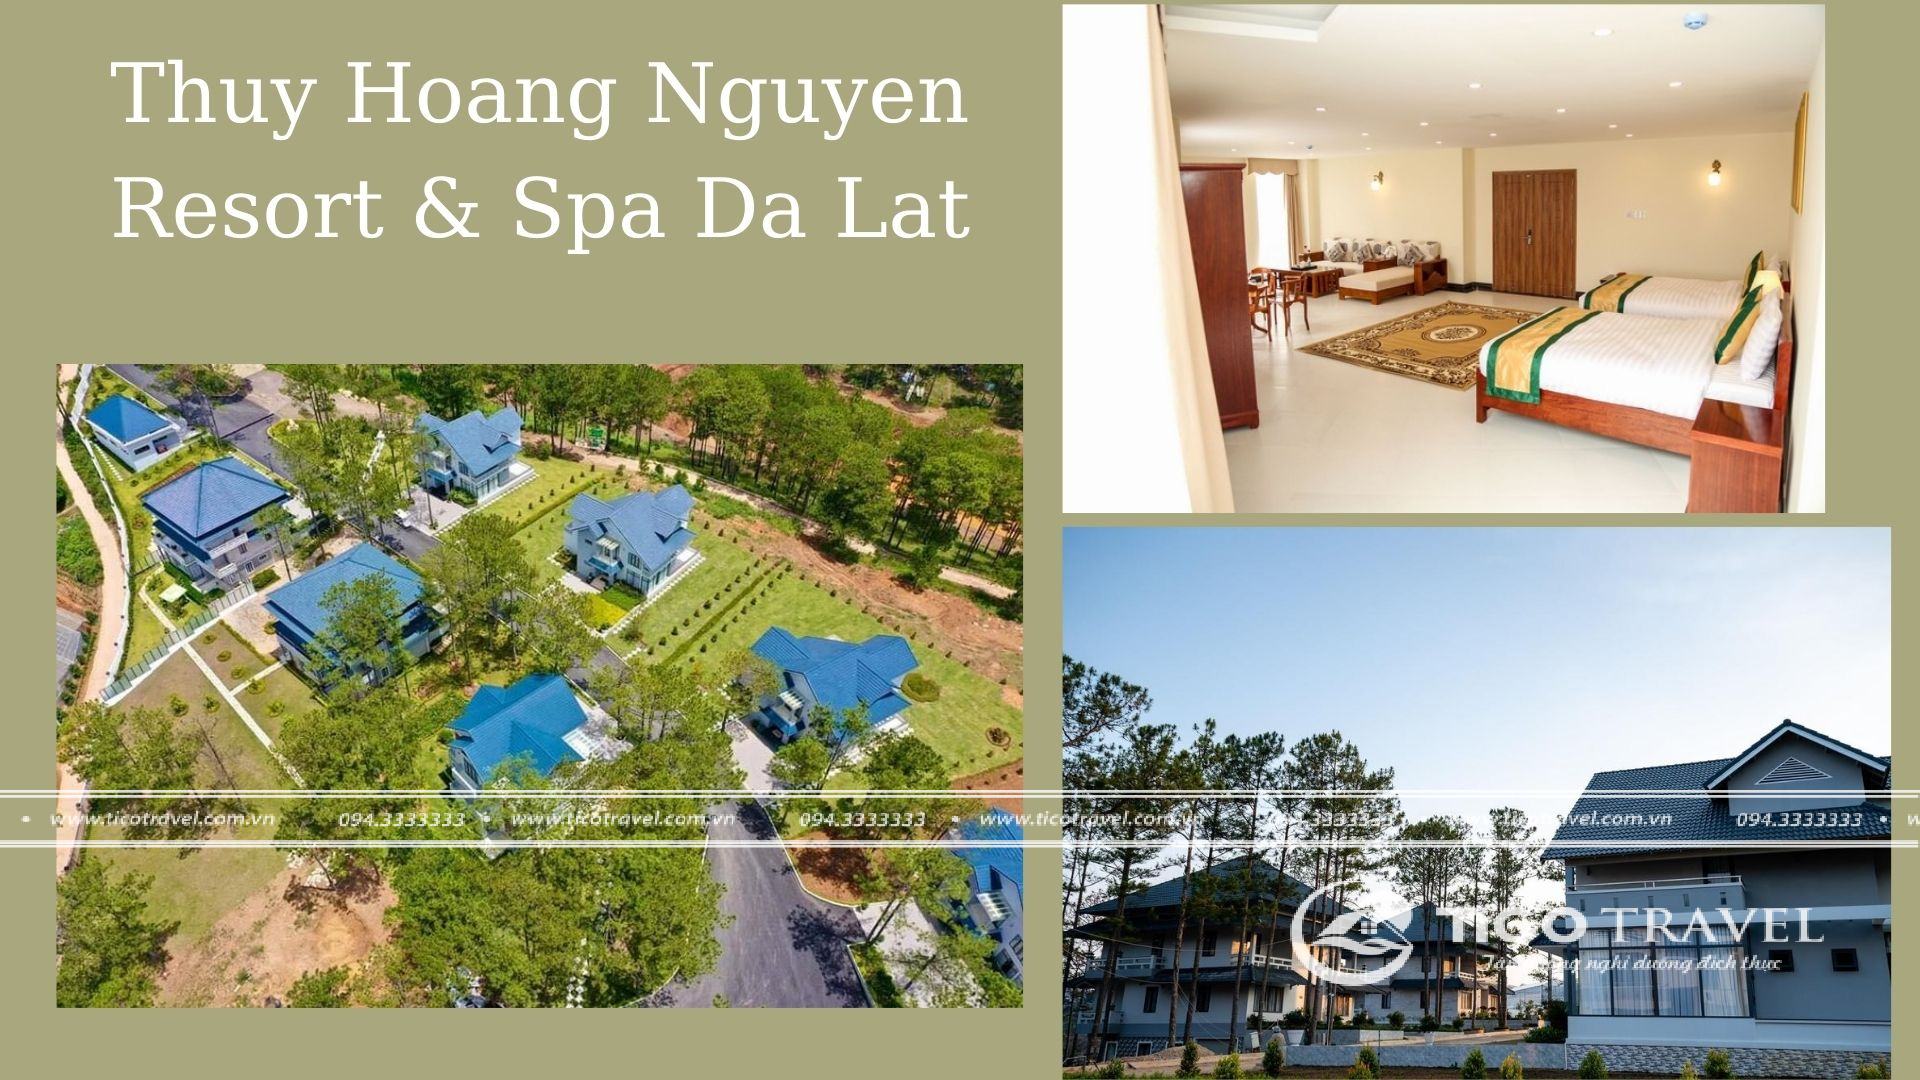 Ảnh chụp toàn cảnh không gian tại Thuy Hoang Nguyen Resort & Spa